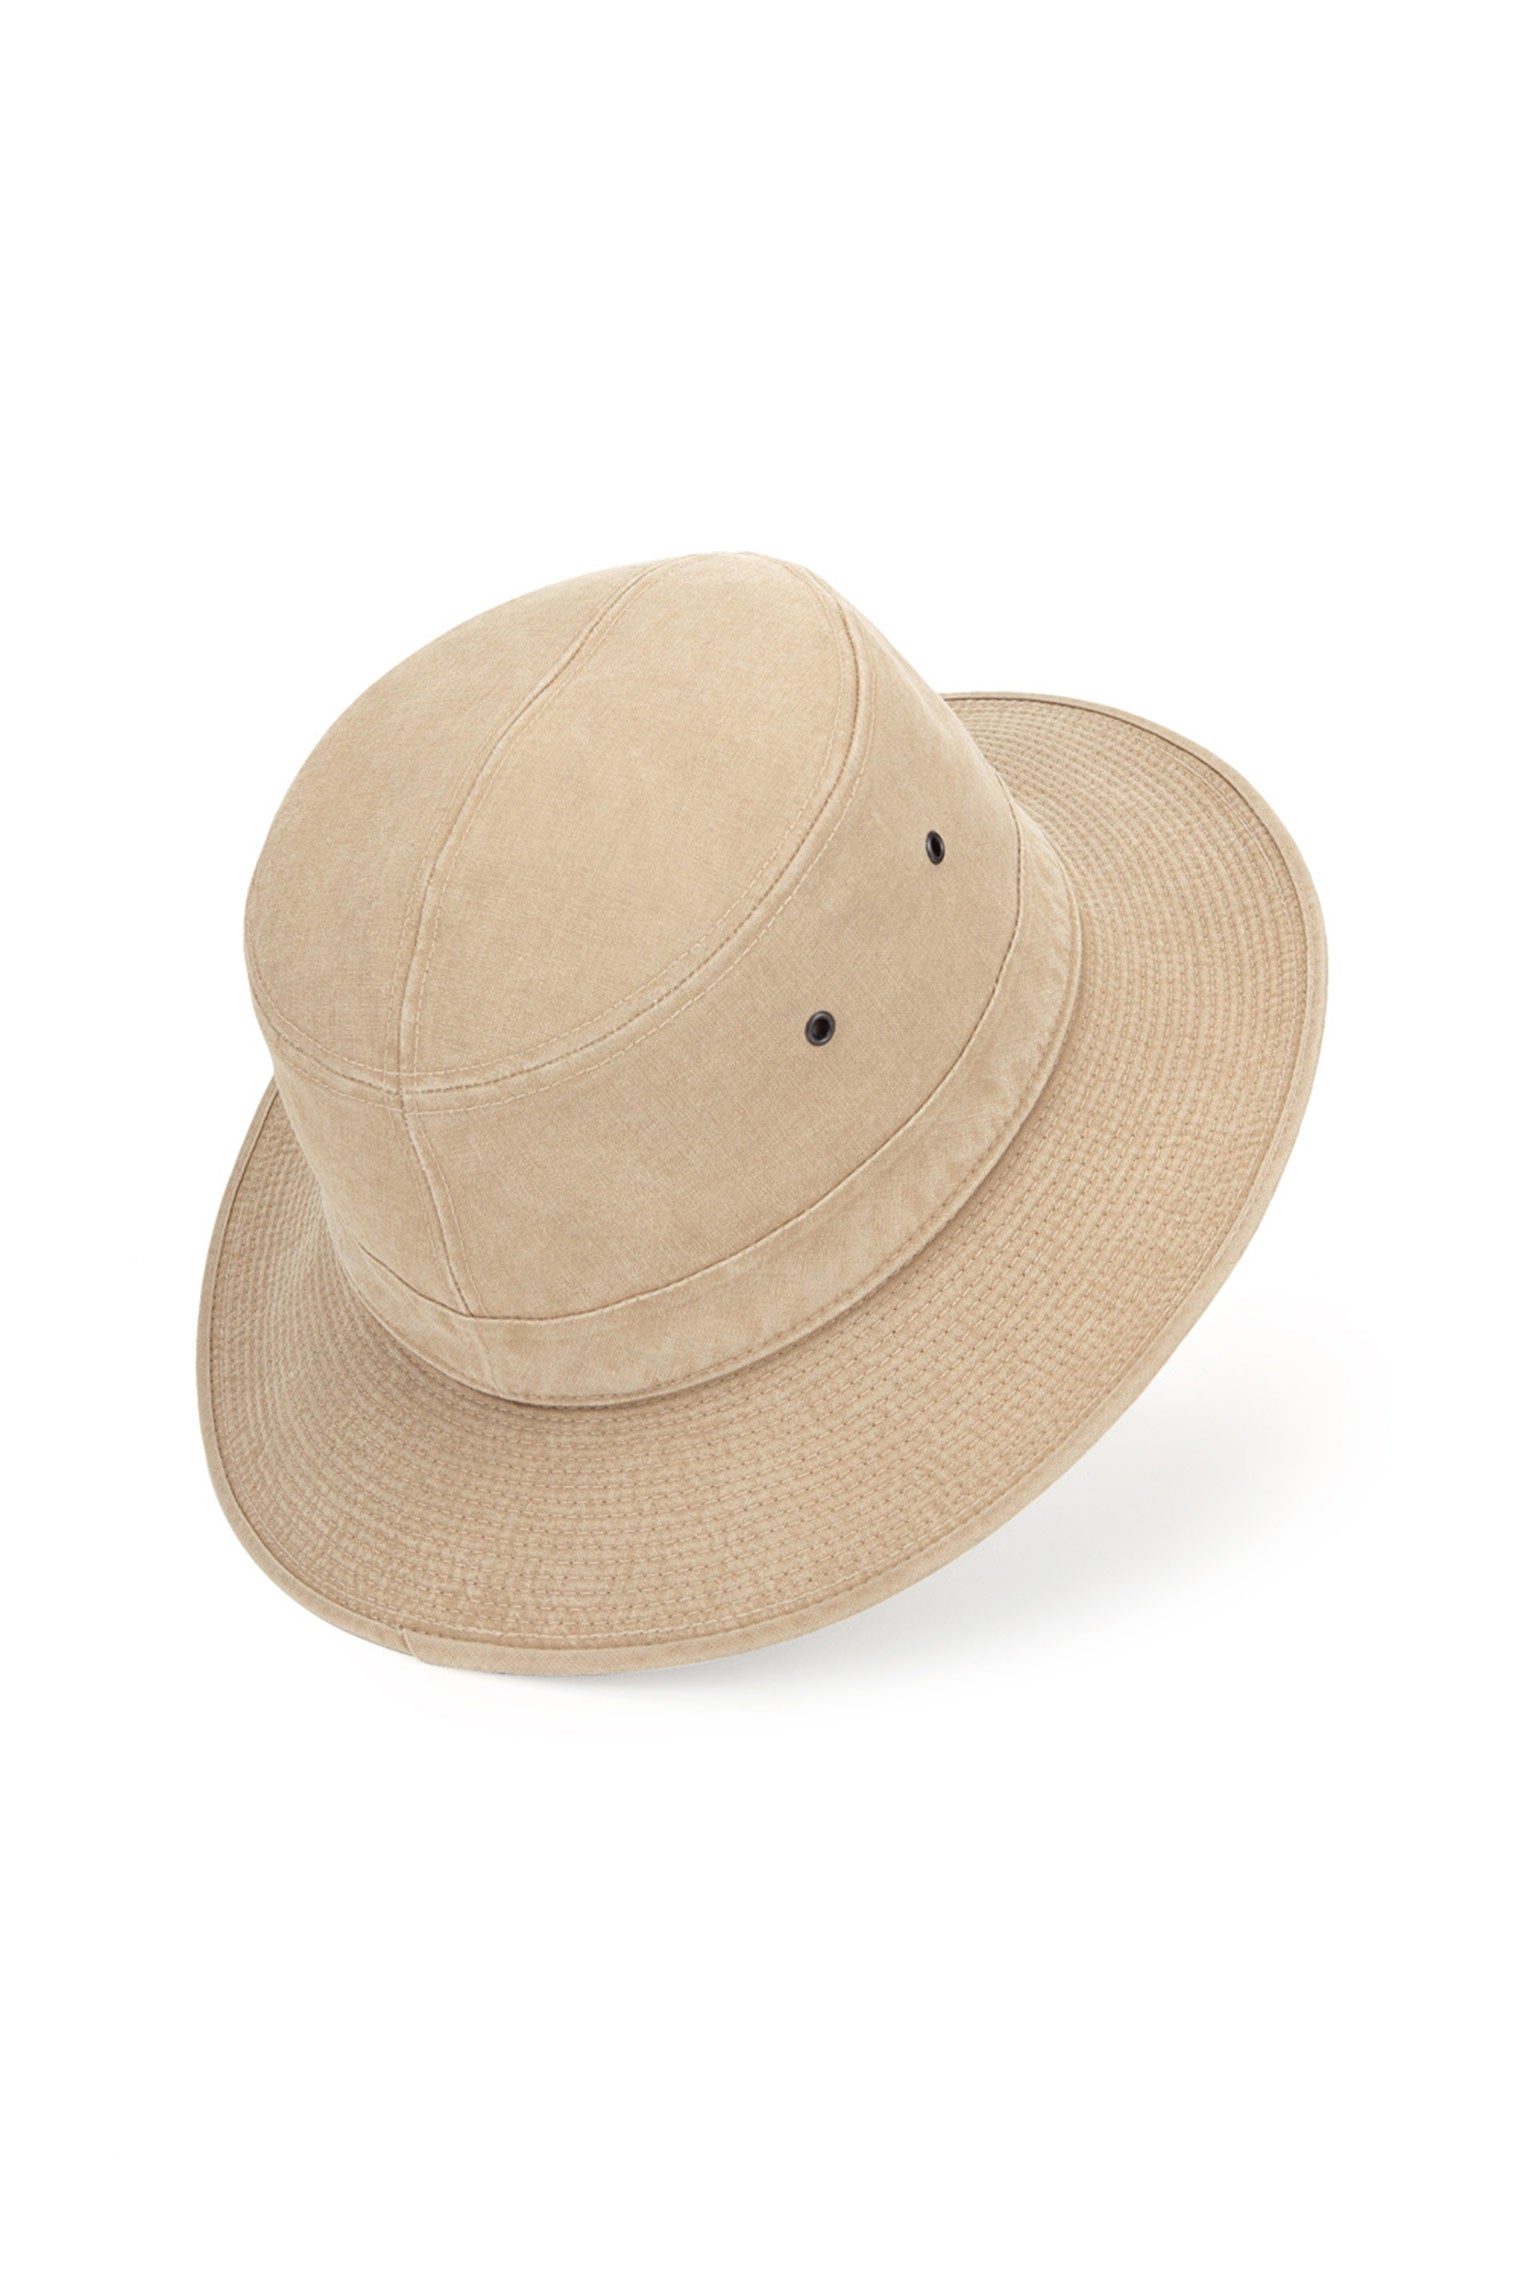 Capri Rollable Hat - Men's Packable & Rollable Hats - Lock & Co. Hatters London UK